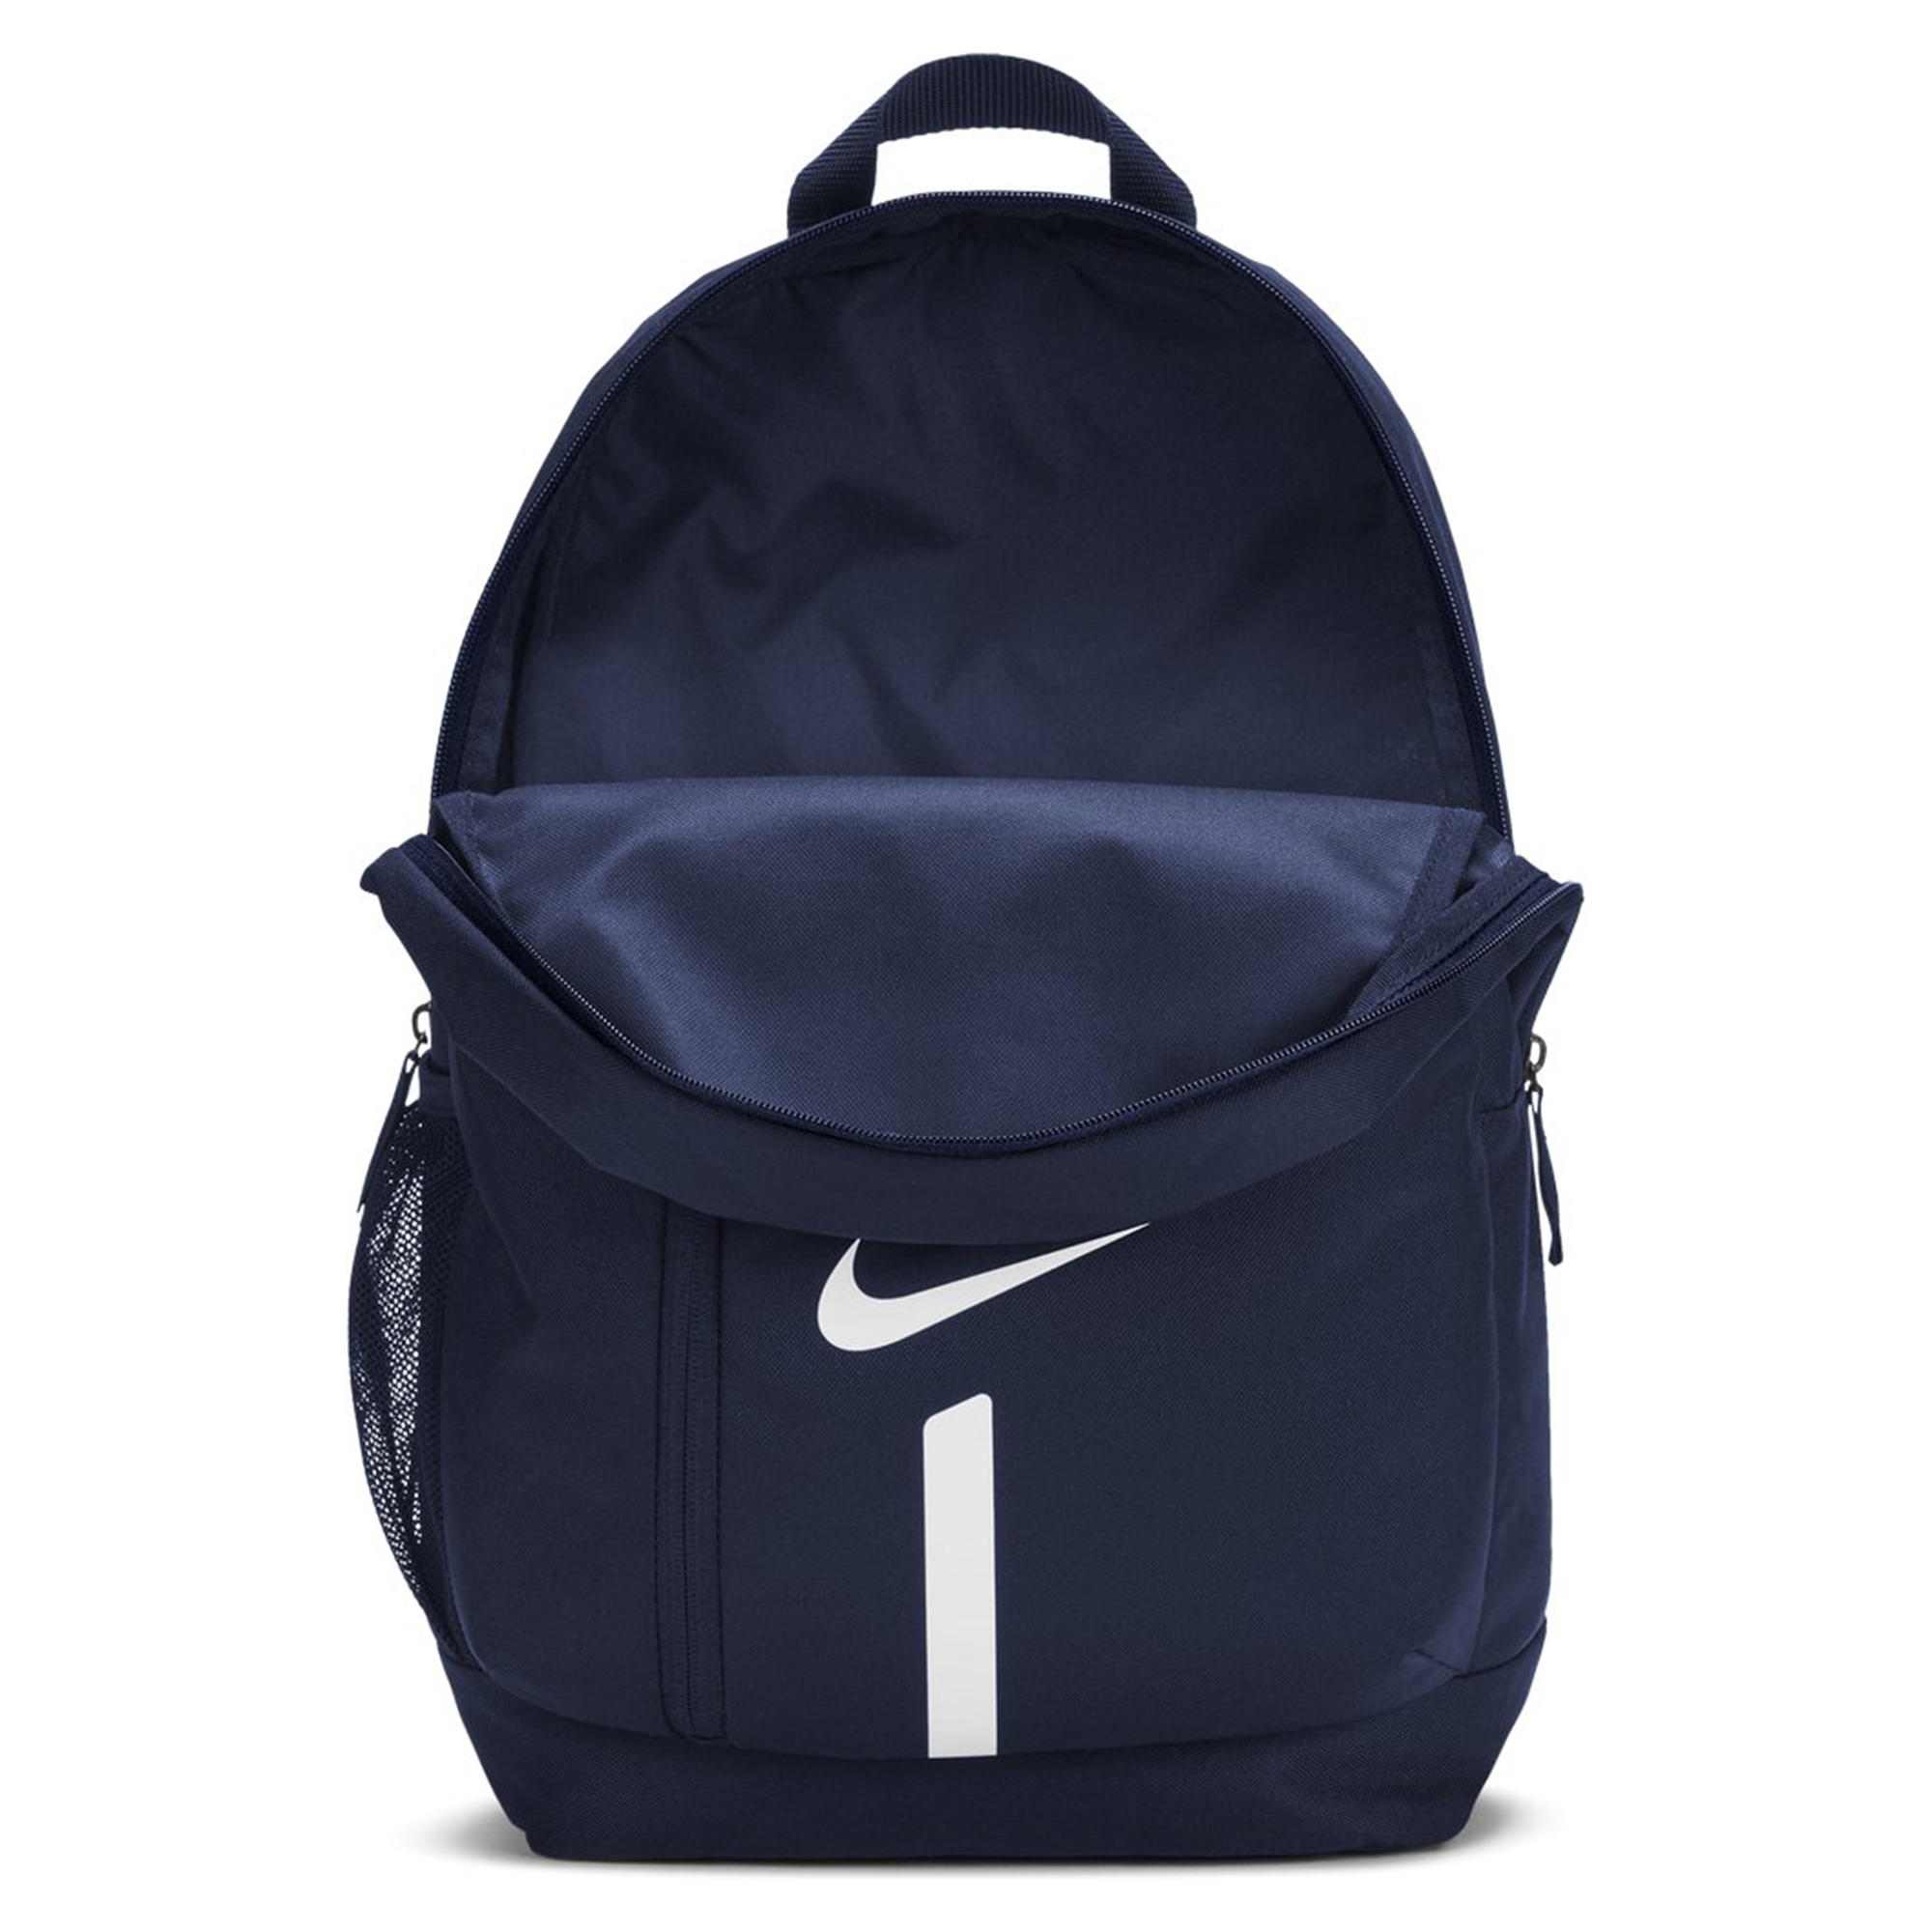 NIKE Academy Team Kinder Rucksack Backpack 45x30x12 cm blau ca.22L